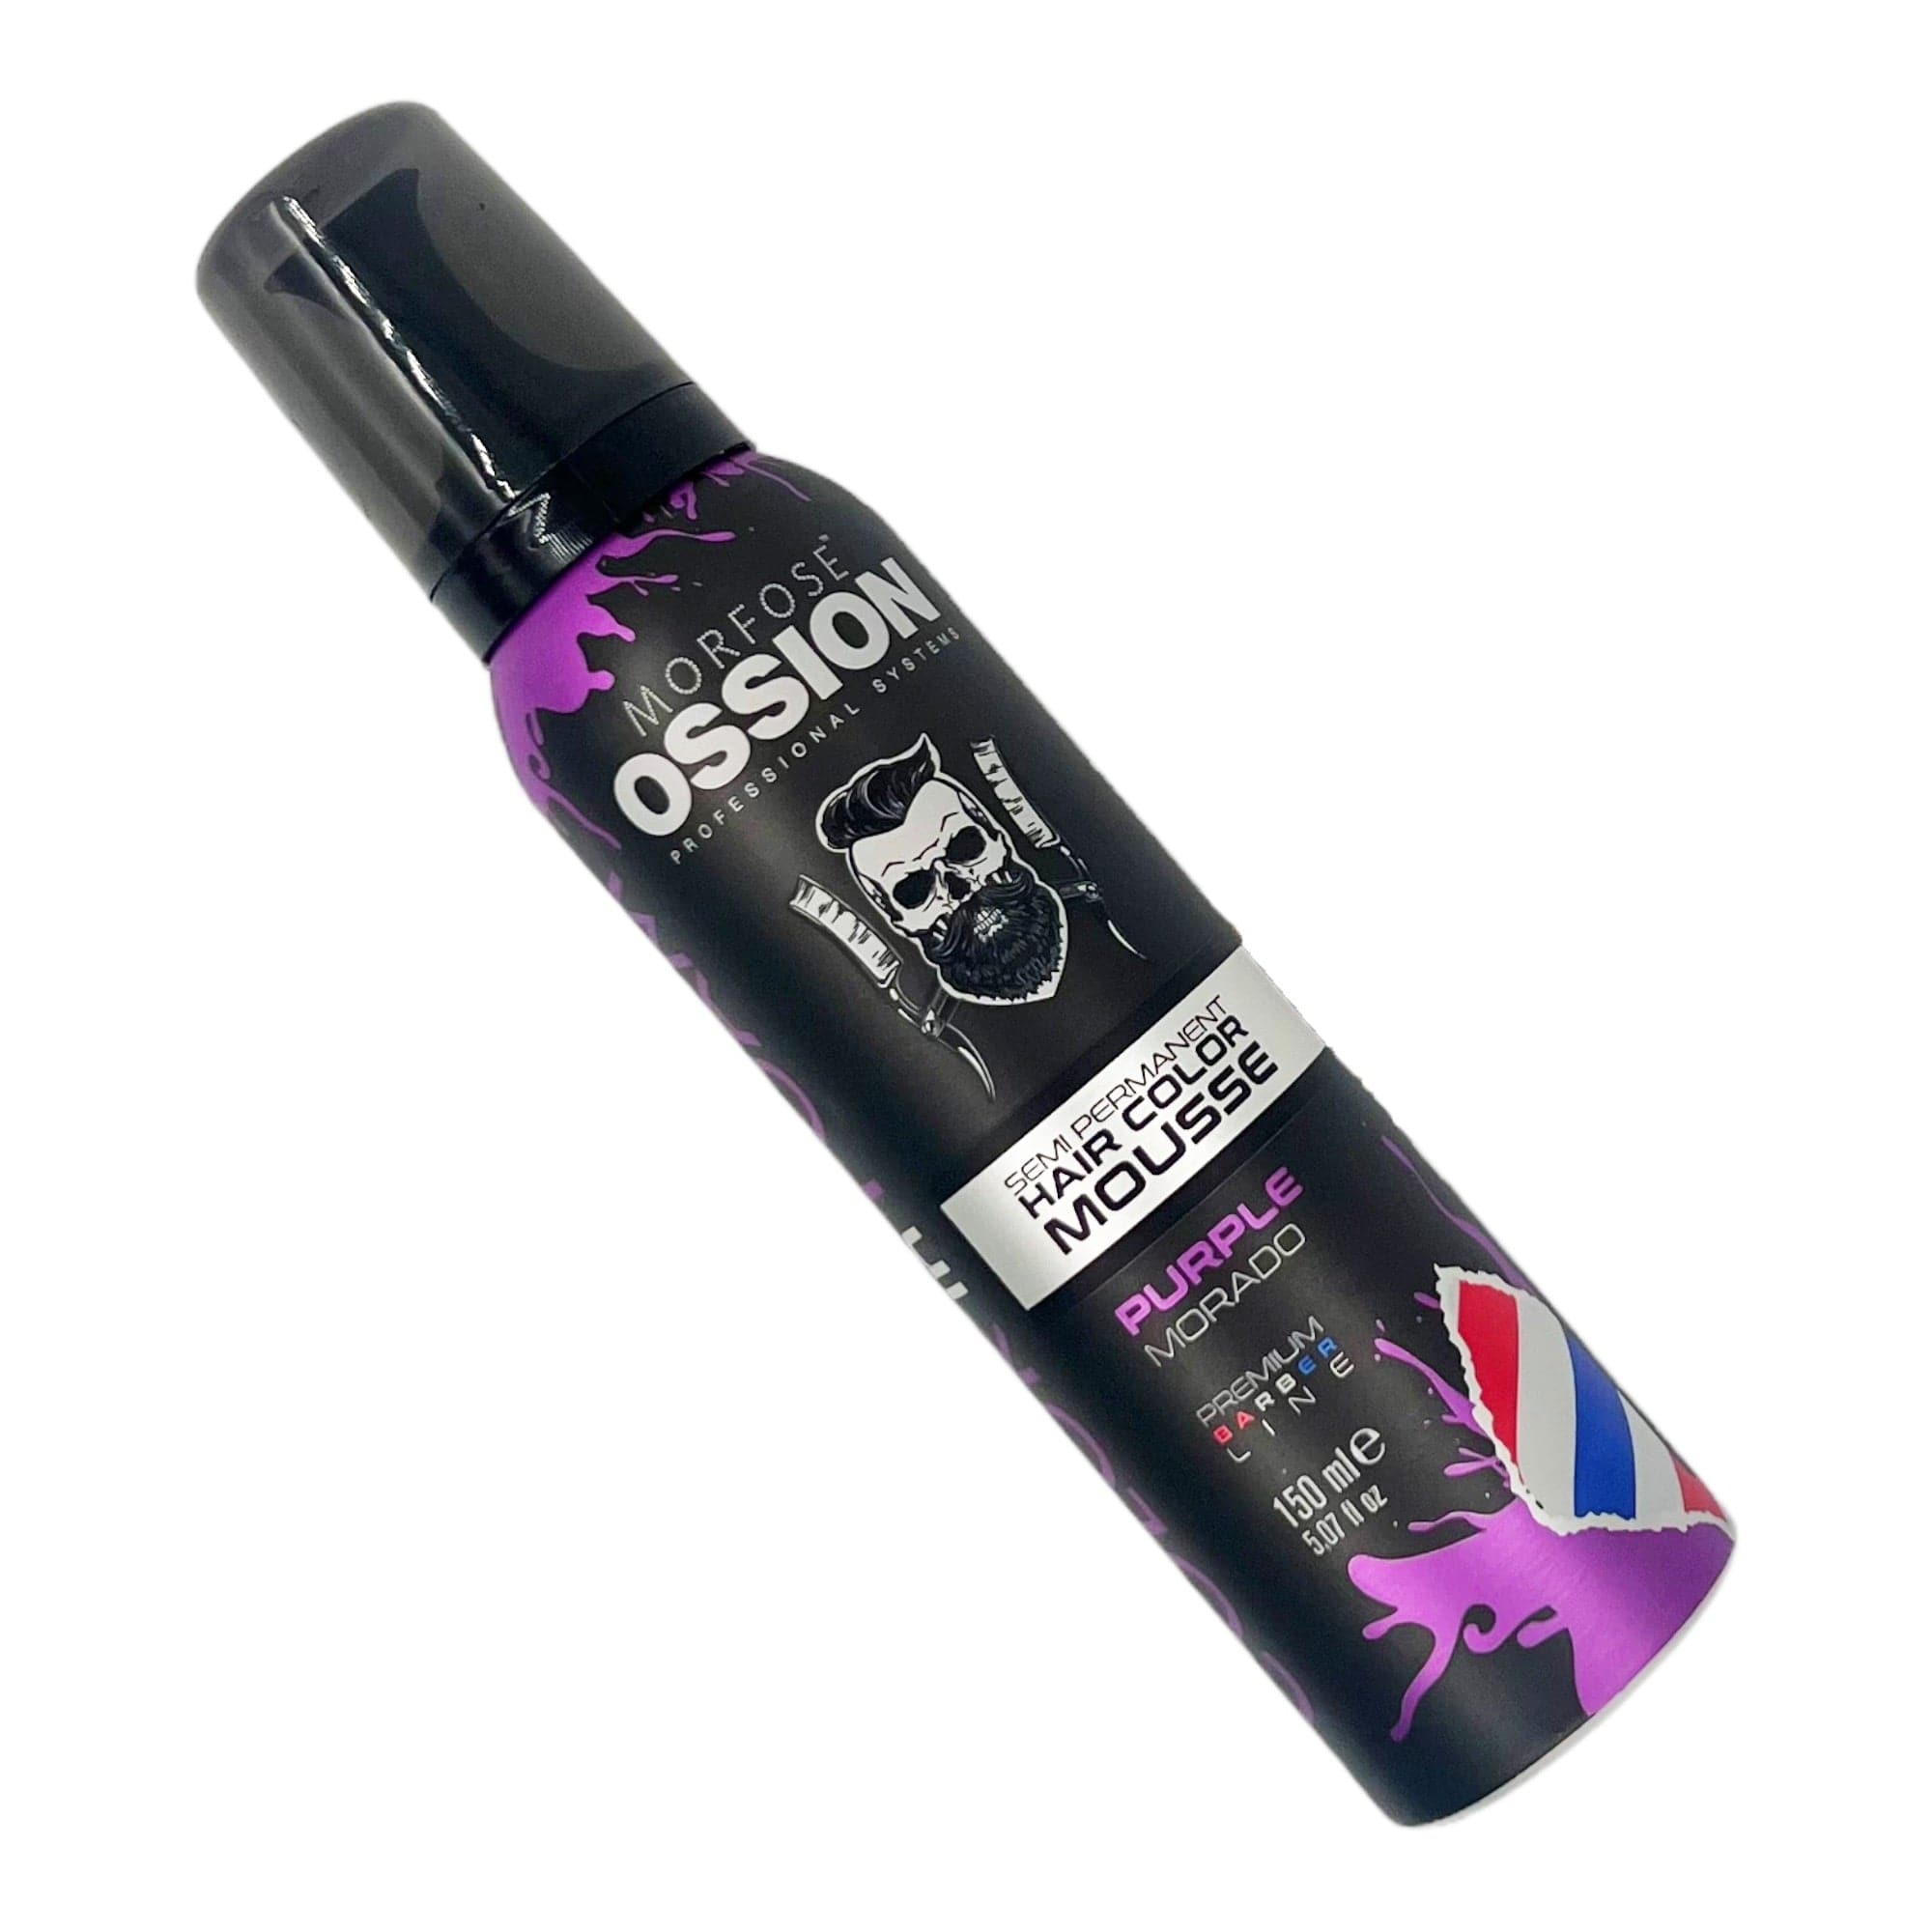 Morfose - Ossion Semi Permanent Hair Colour Mousse Purple 150ml